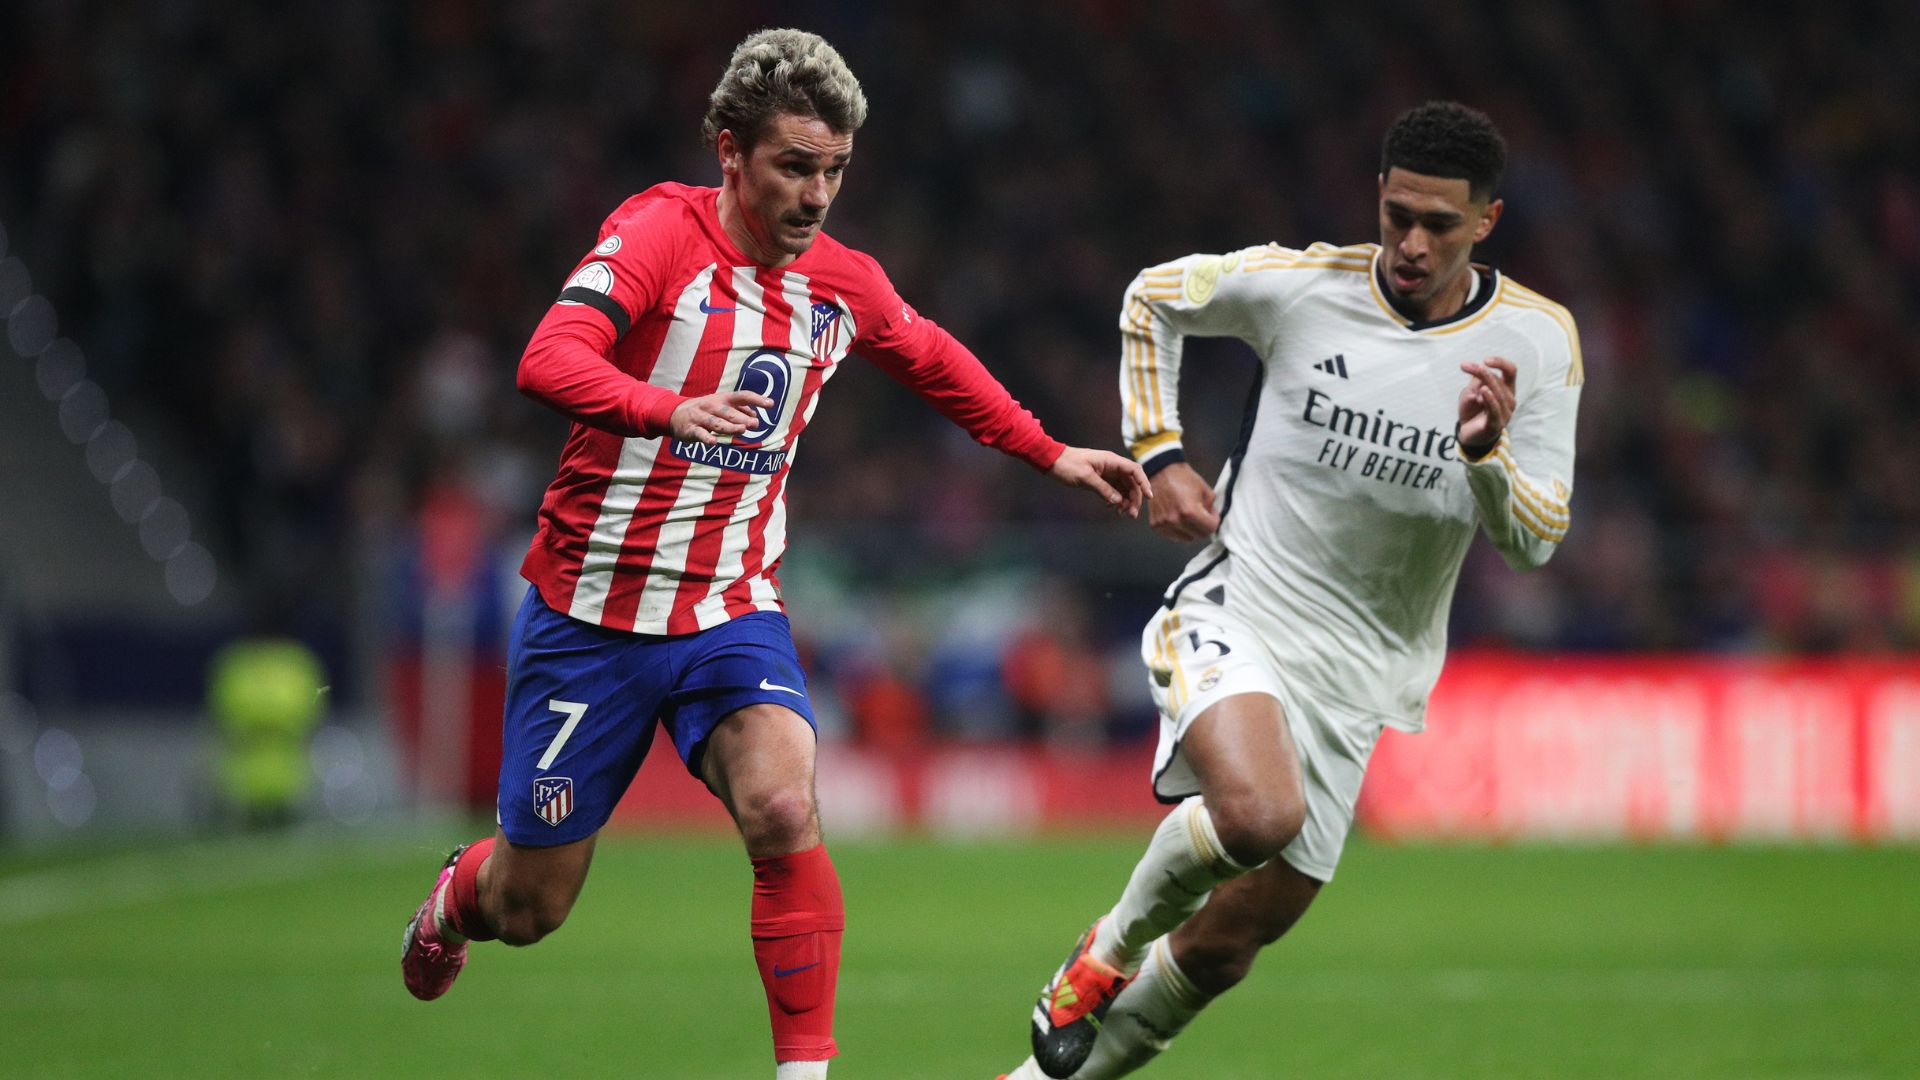 Partida muito disputada entre Real Madrid e Atlético de Madrid (Crédito: Getty Images)